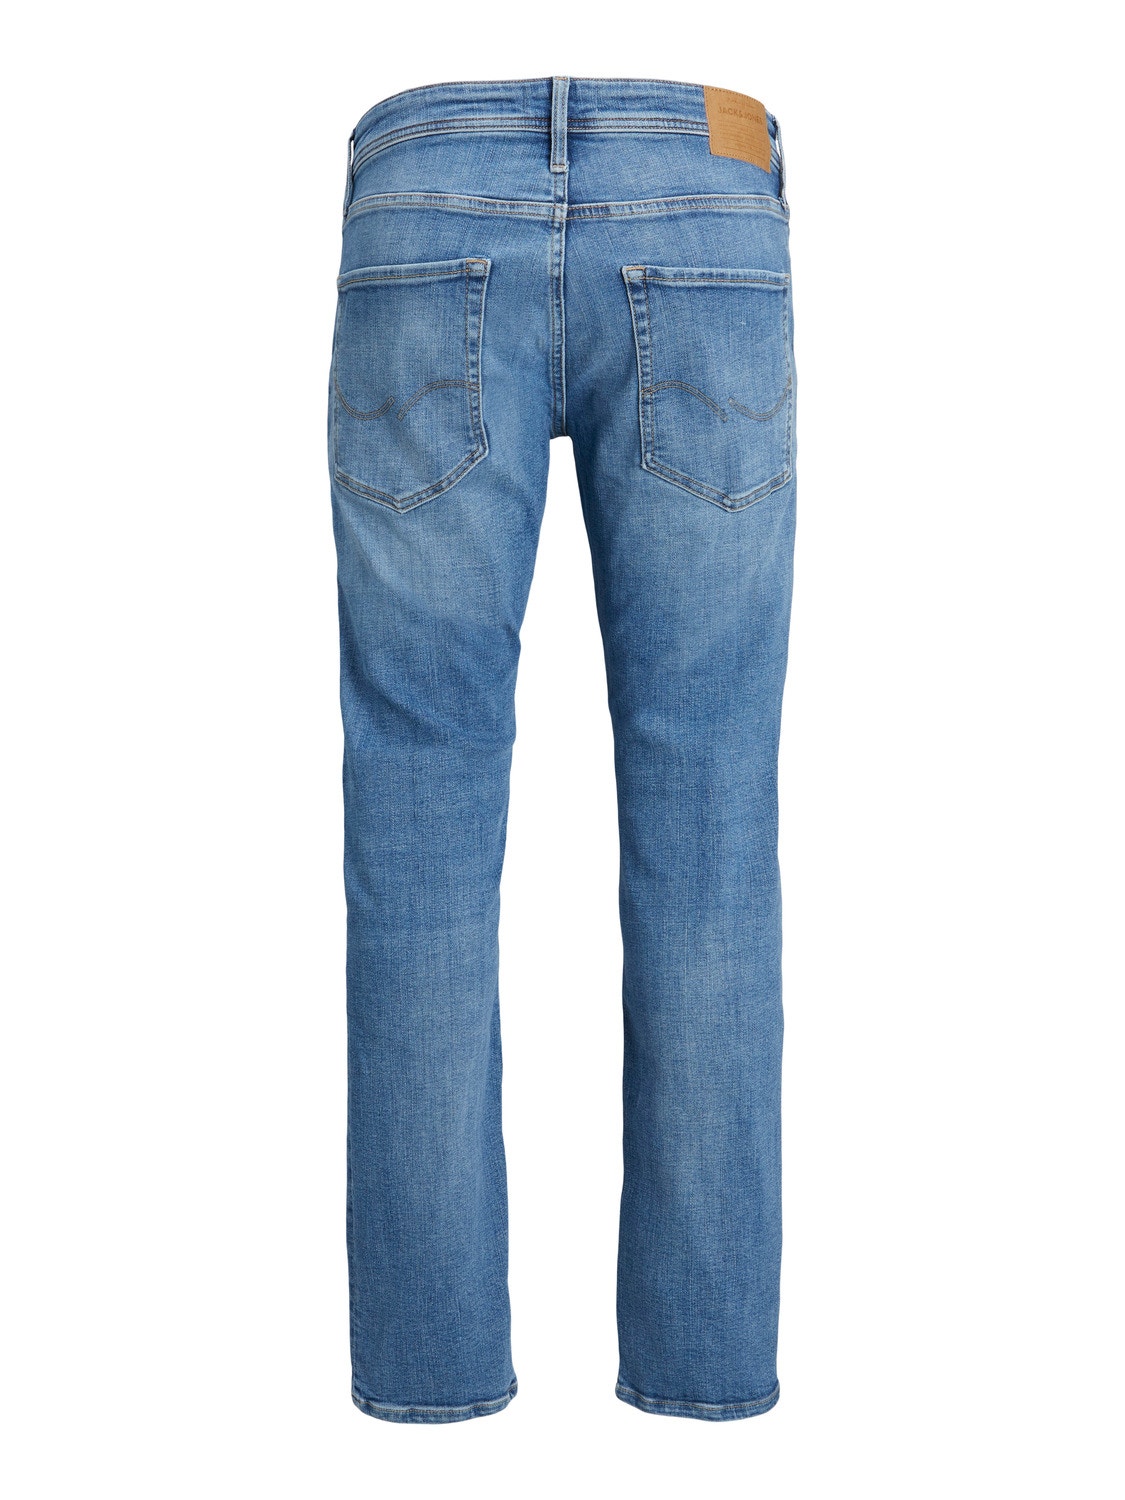 Jack & Jones JJIMIKE JJORIGINAL JOS 511 Jeans Tapered Fit -Blue Denim - 12235838